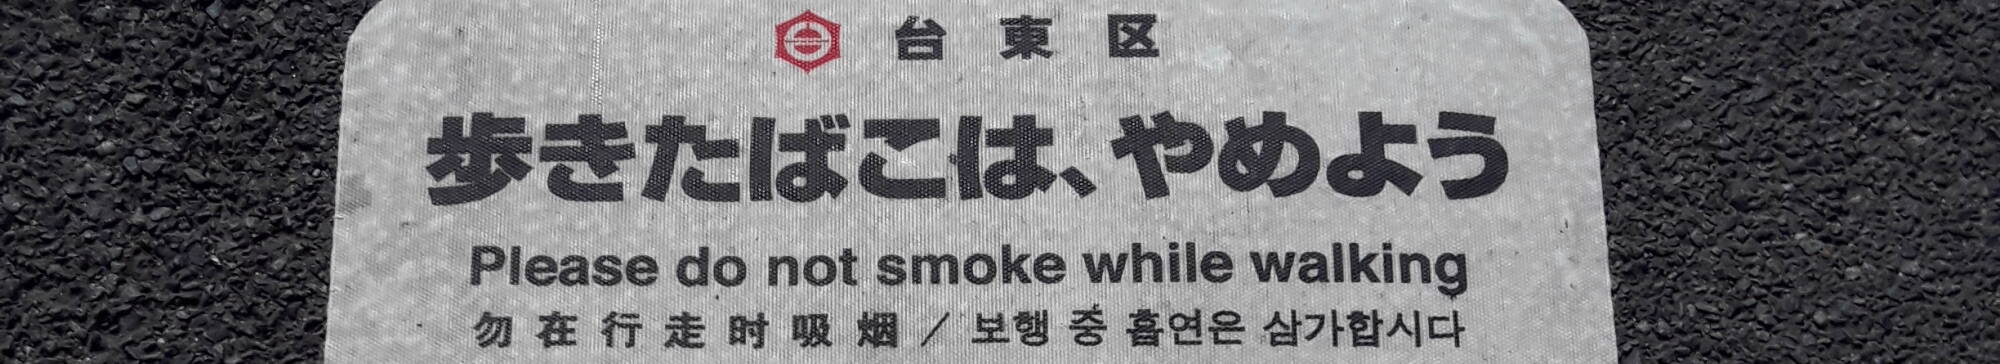 No smoking sign in Tōkyō.